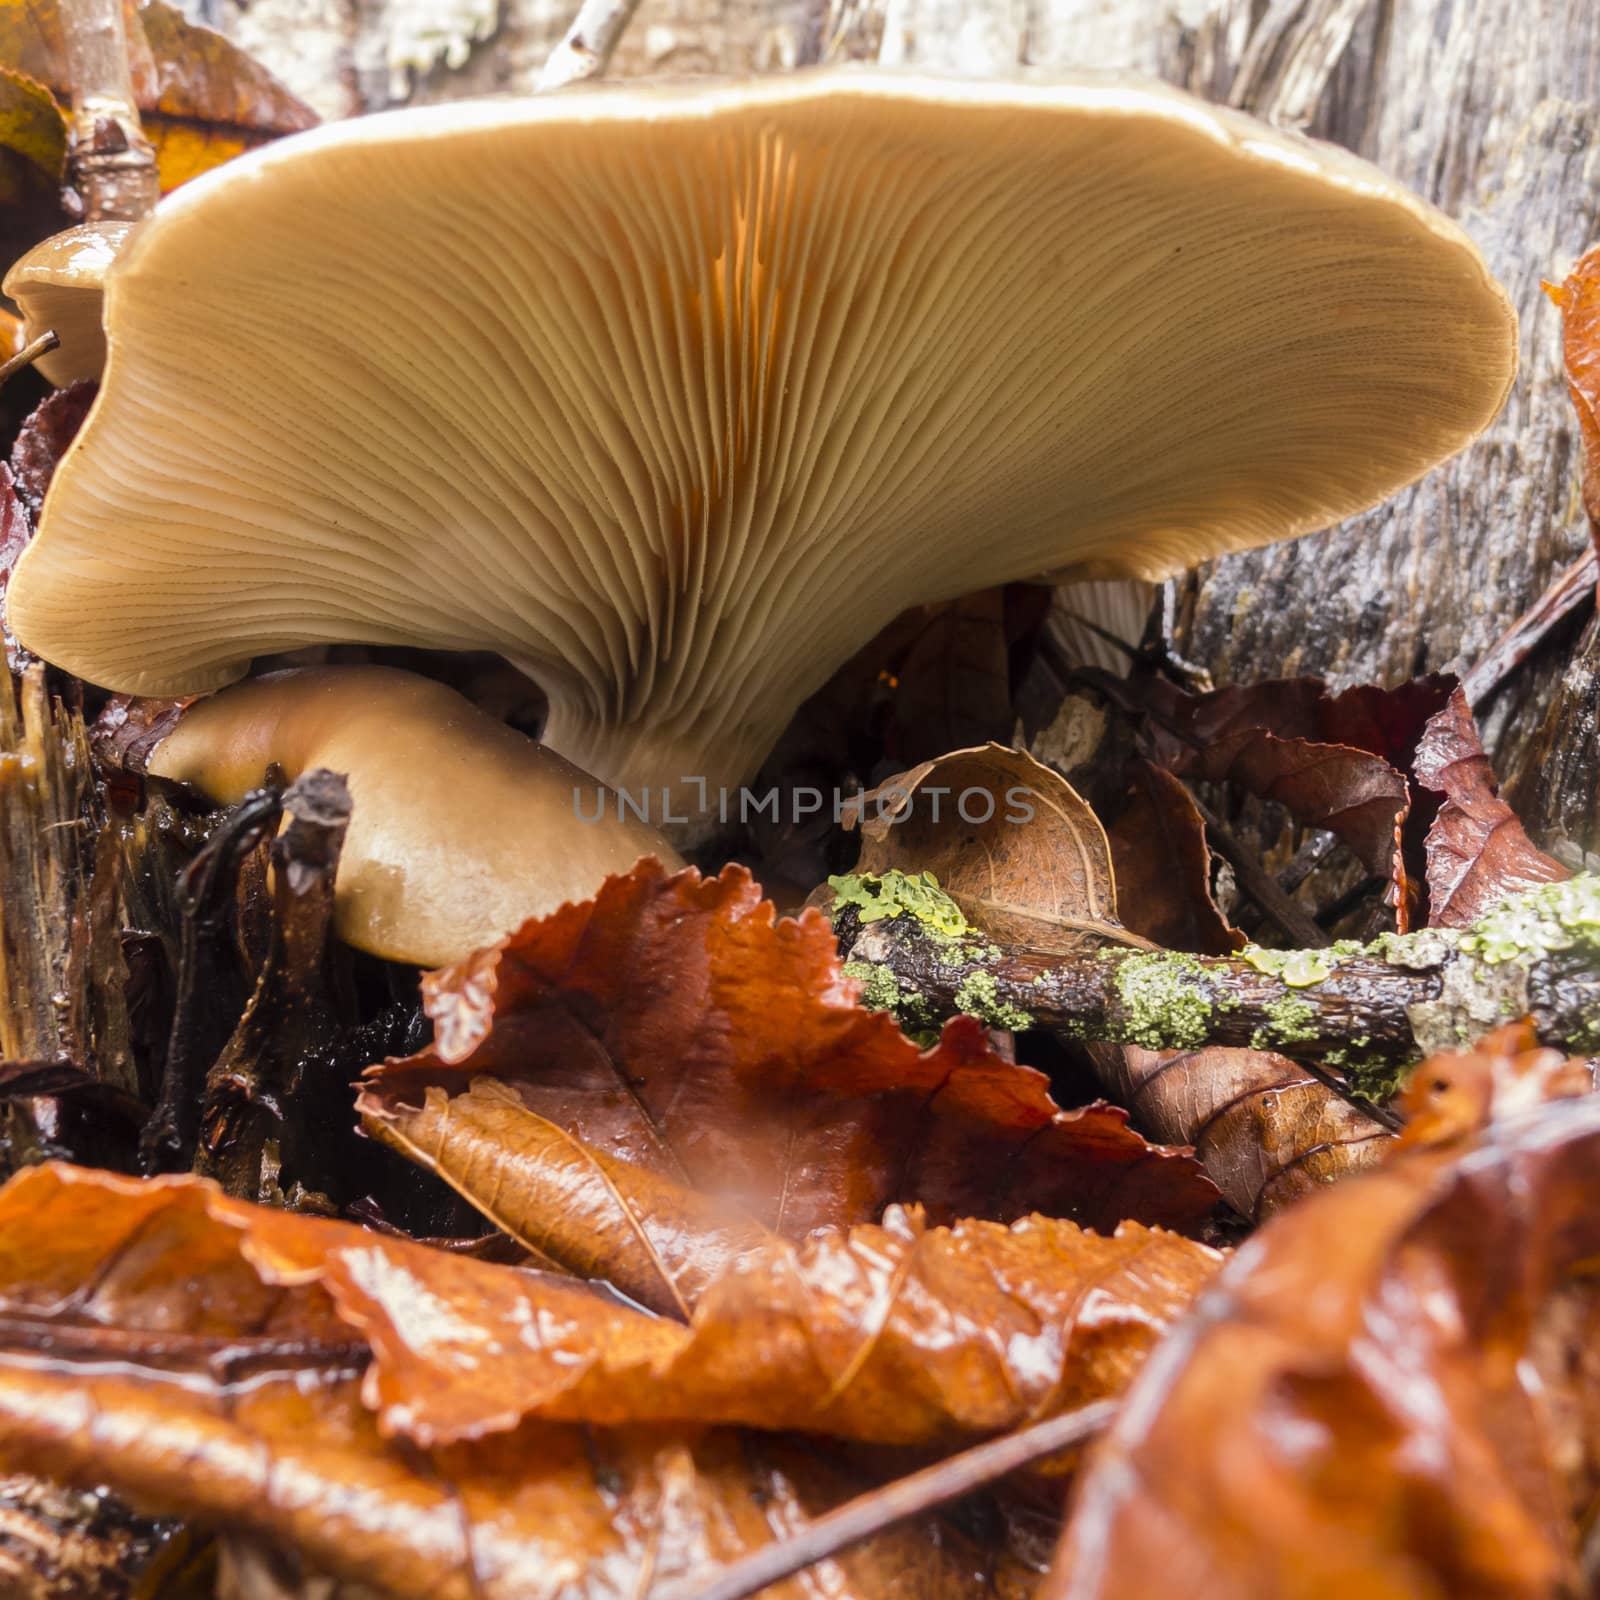 Mushroom underside growing on dead leaves